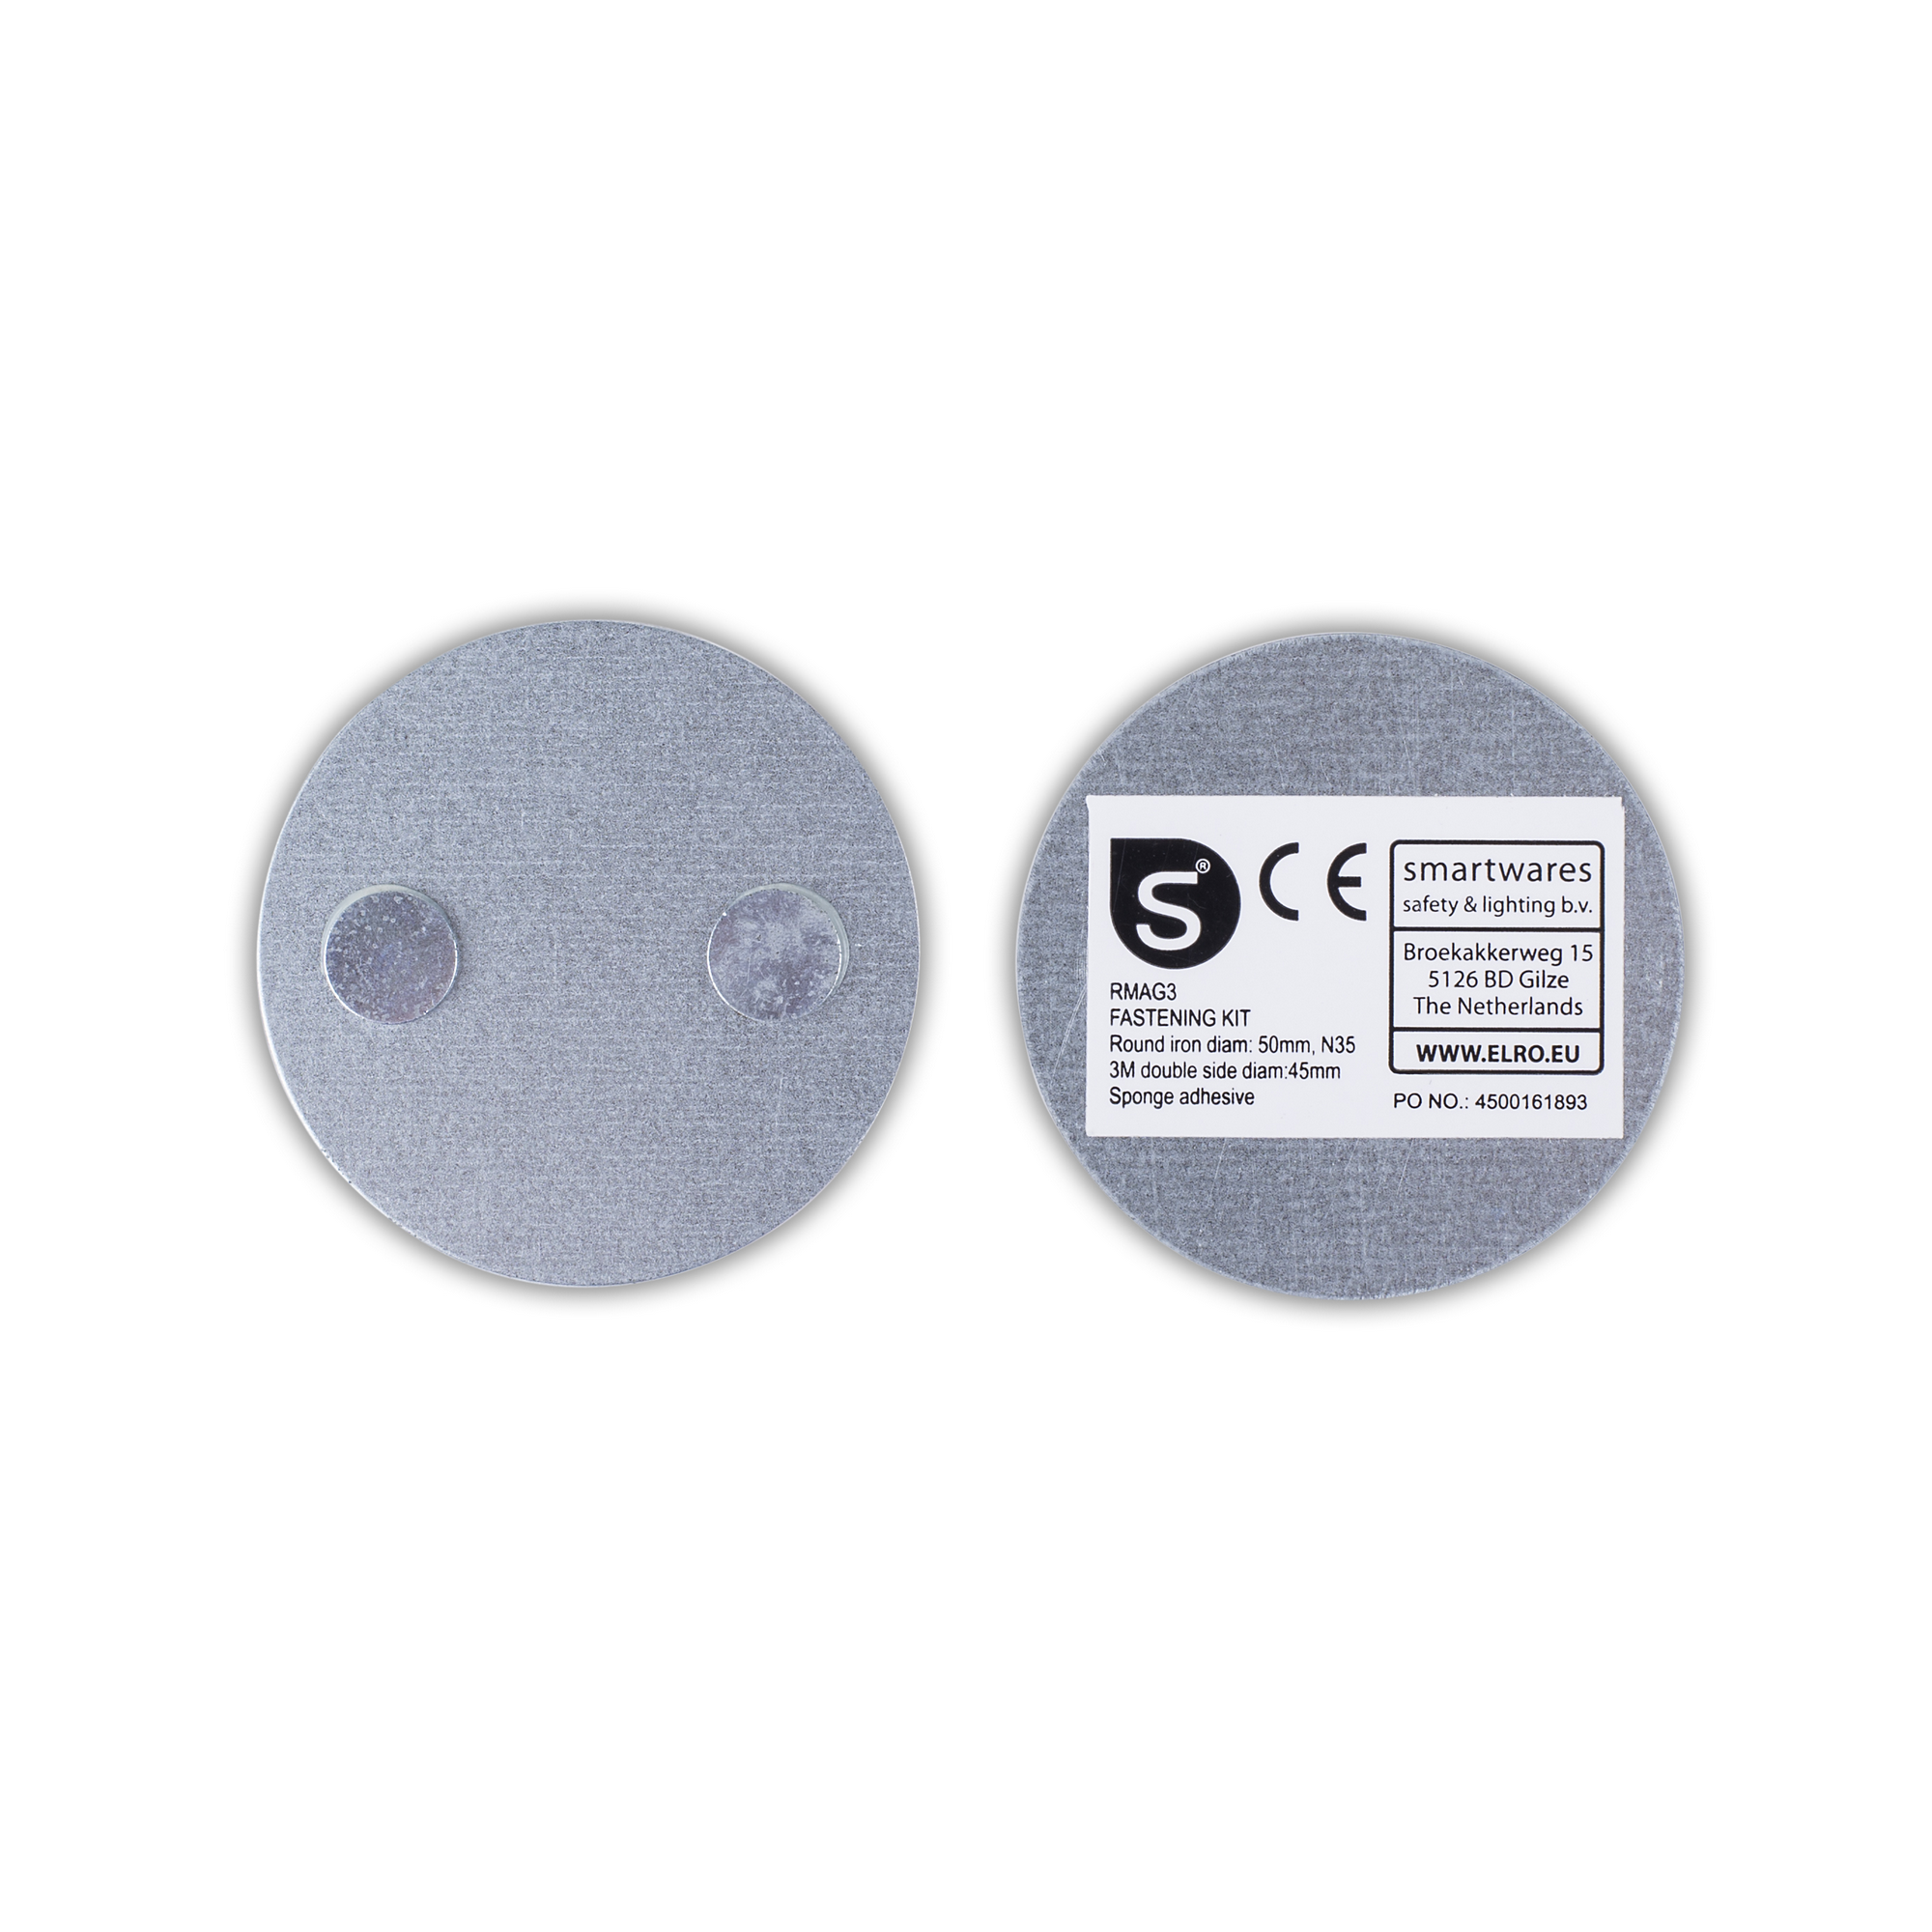 Magnethalterung 'RMAG3' für Mini-Rauchmelder + product picture